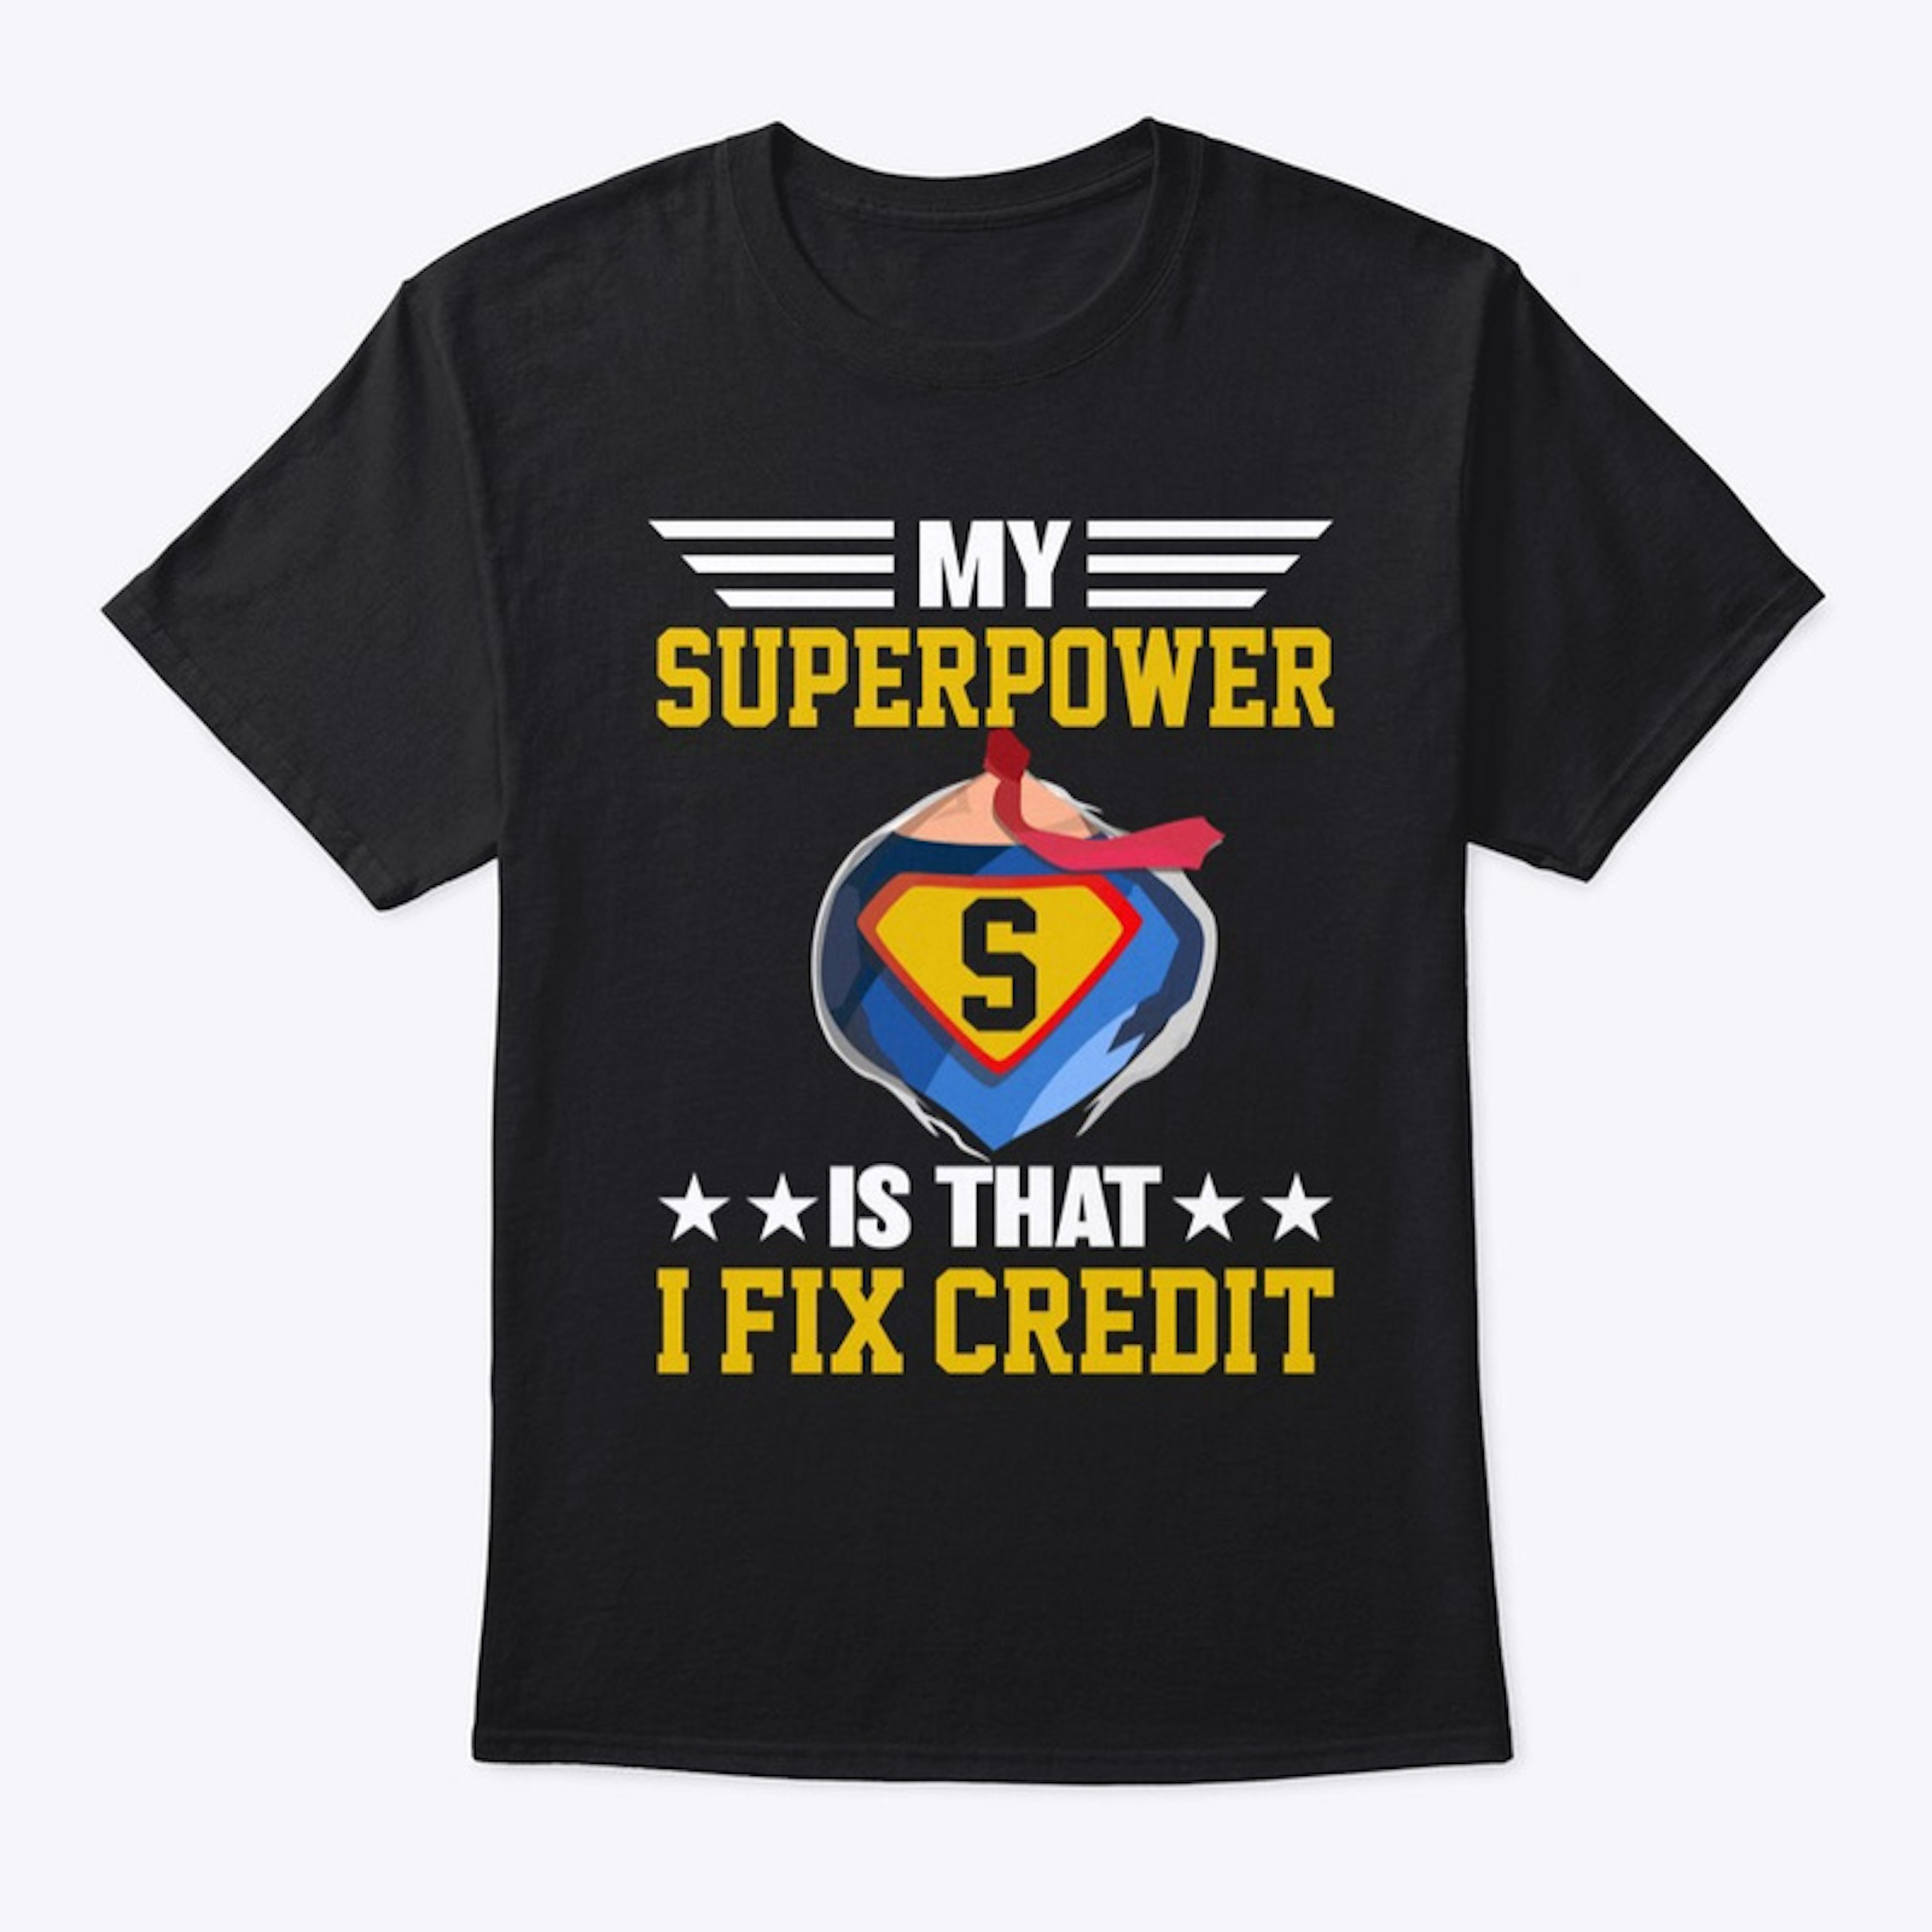 Superpower Credit Tee